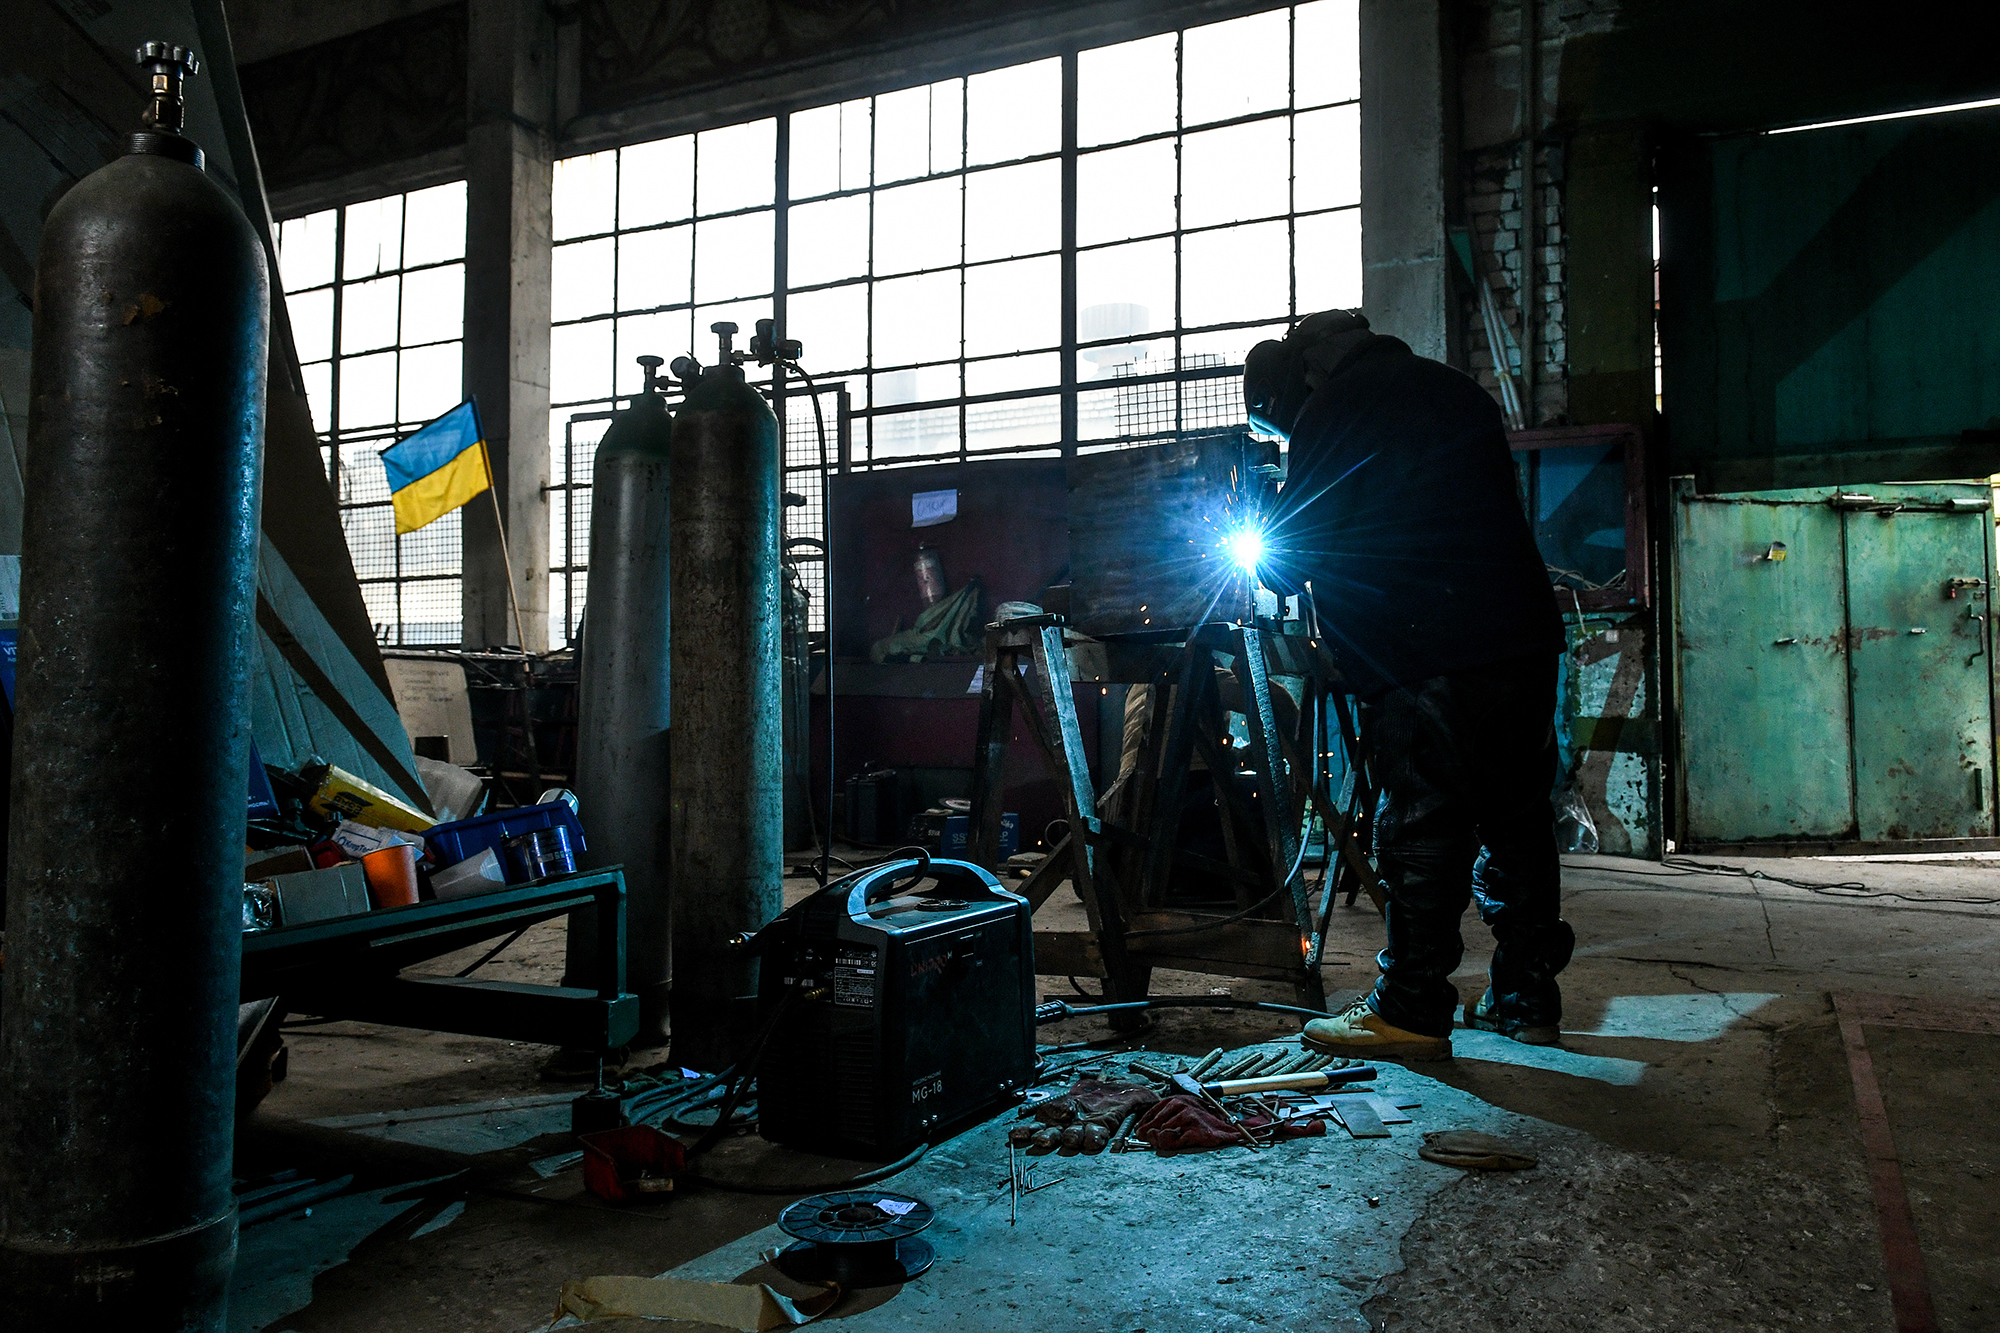 Работы больше чем соискателей. Самые востребованные вакансии в Украине с высокими зарплатами